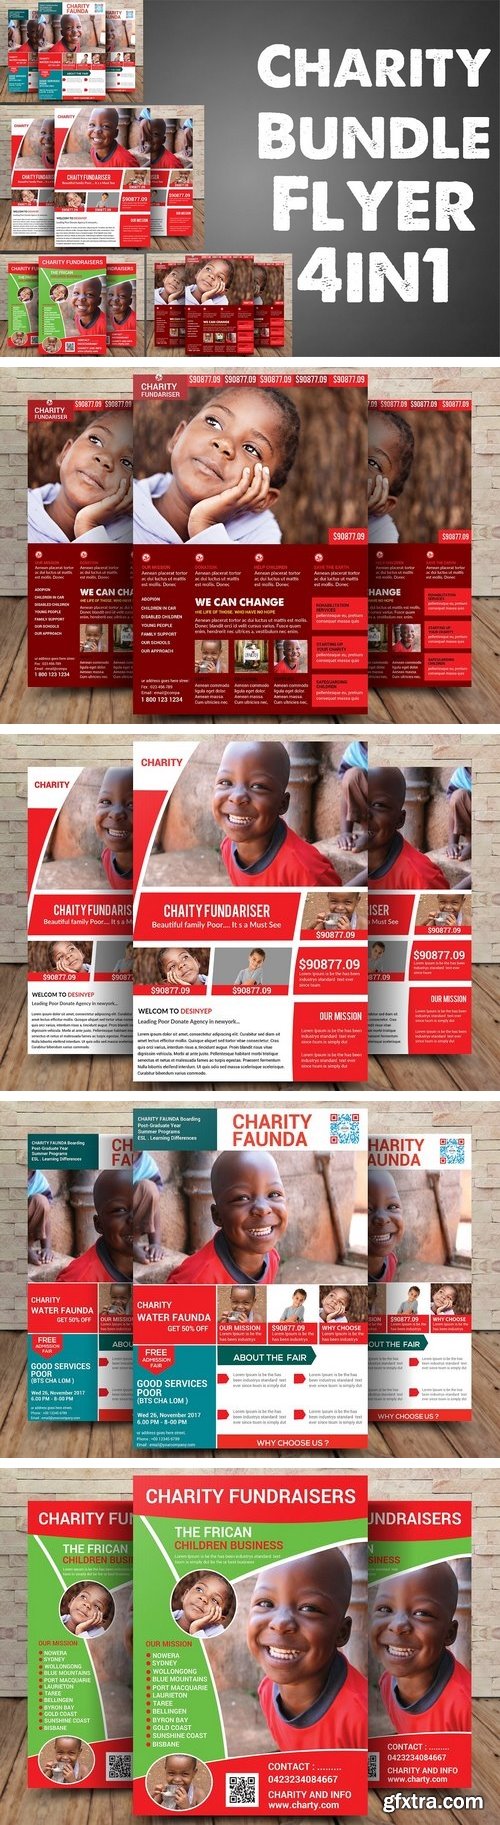 CM - Charity Bundle Flyer 4in1 2093929